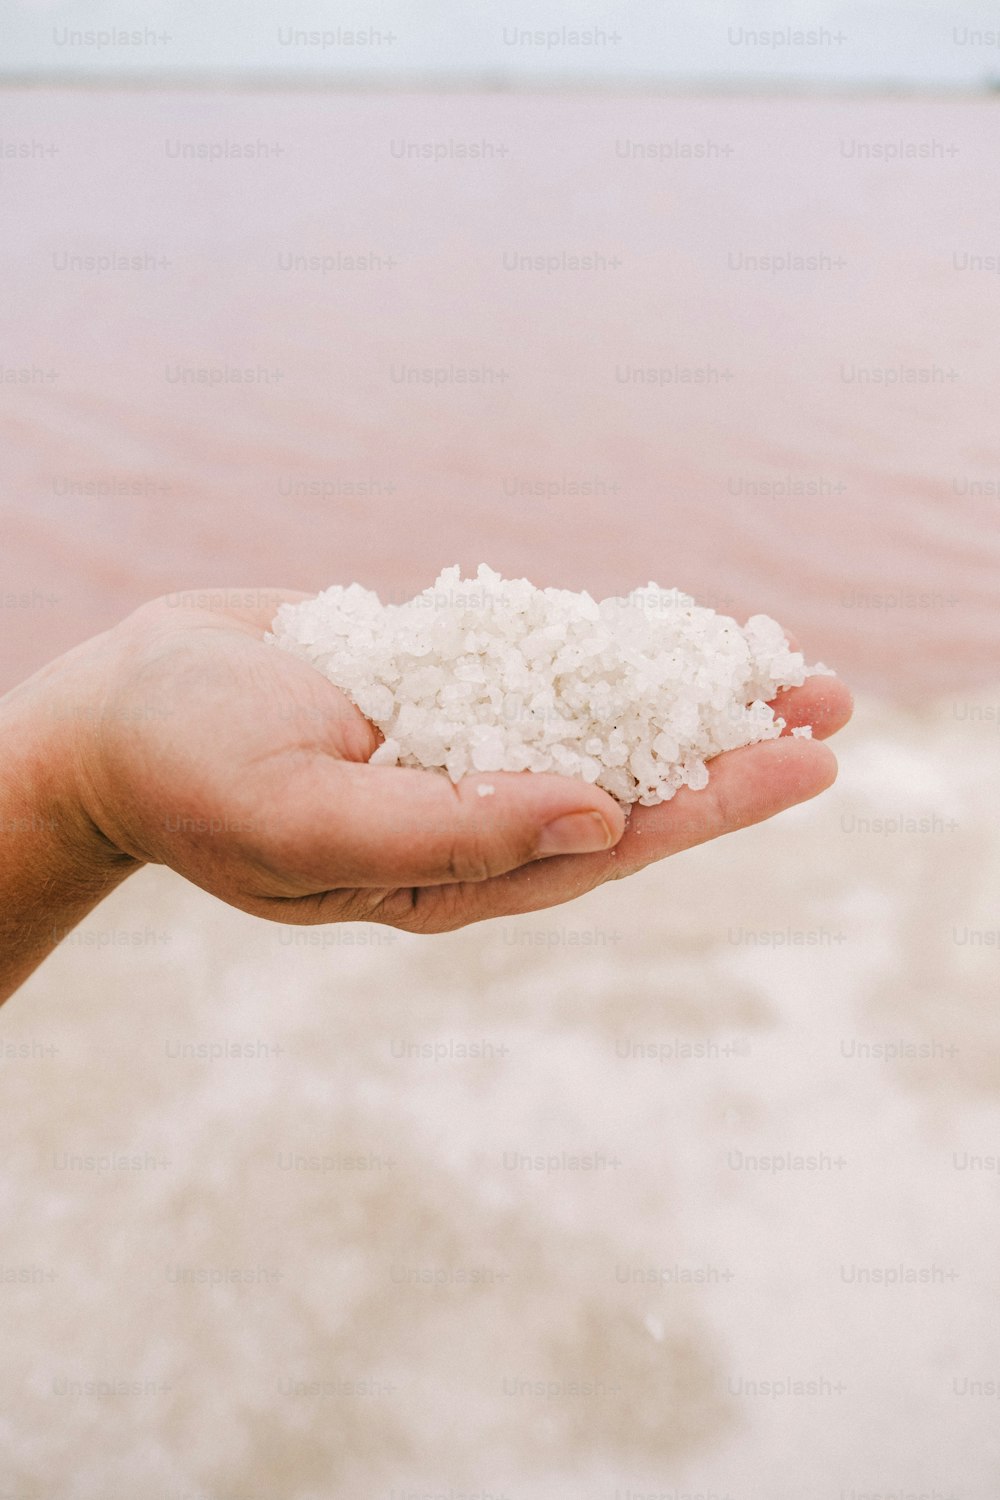 eine Person, die eine Handvoll Salz in der Hand hält